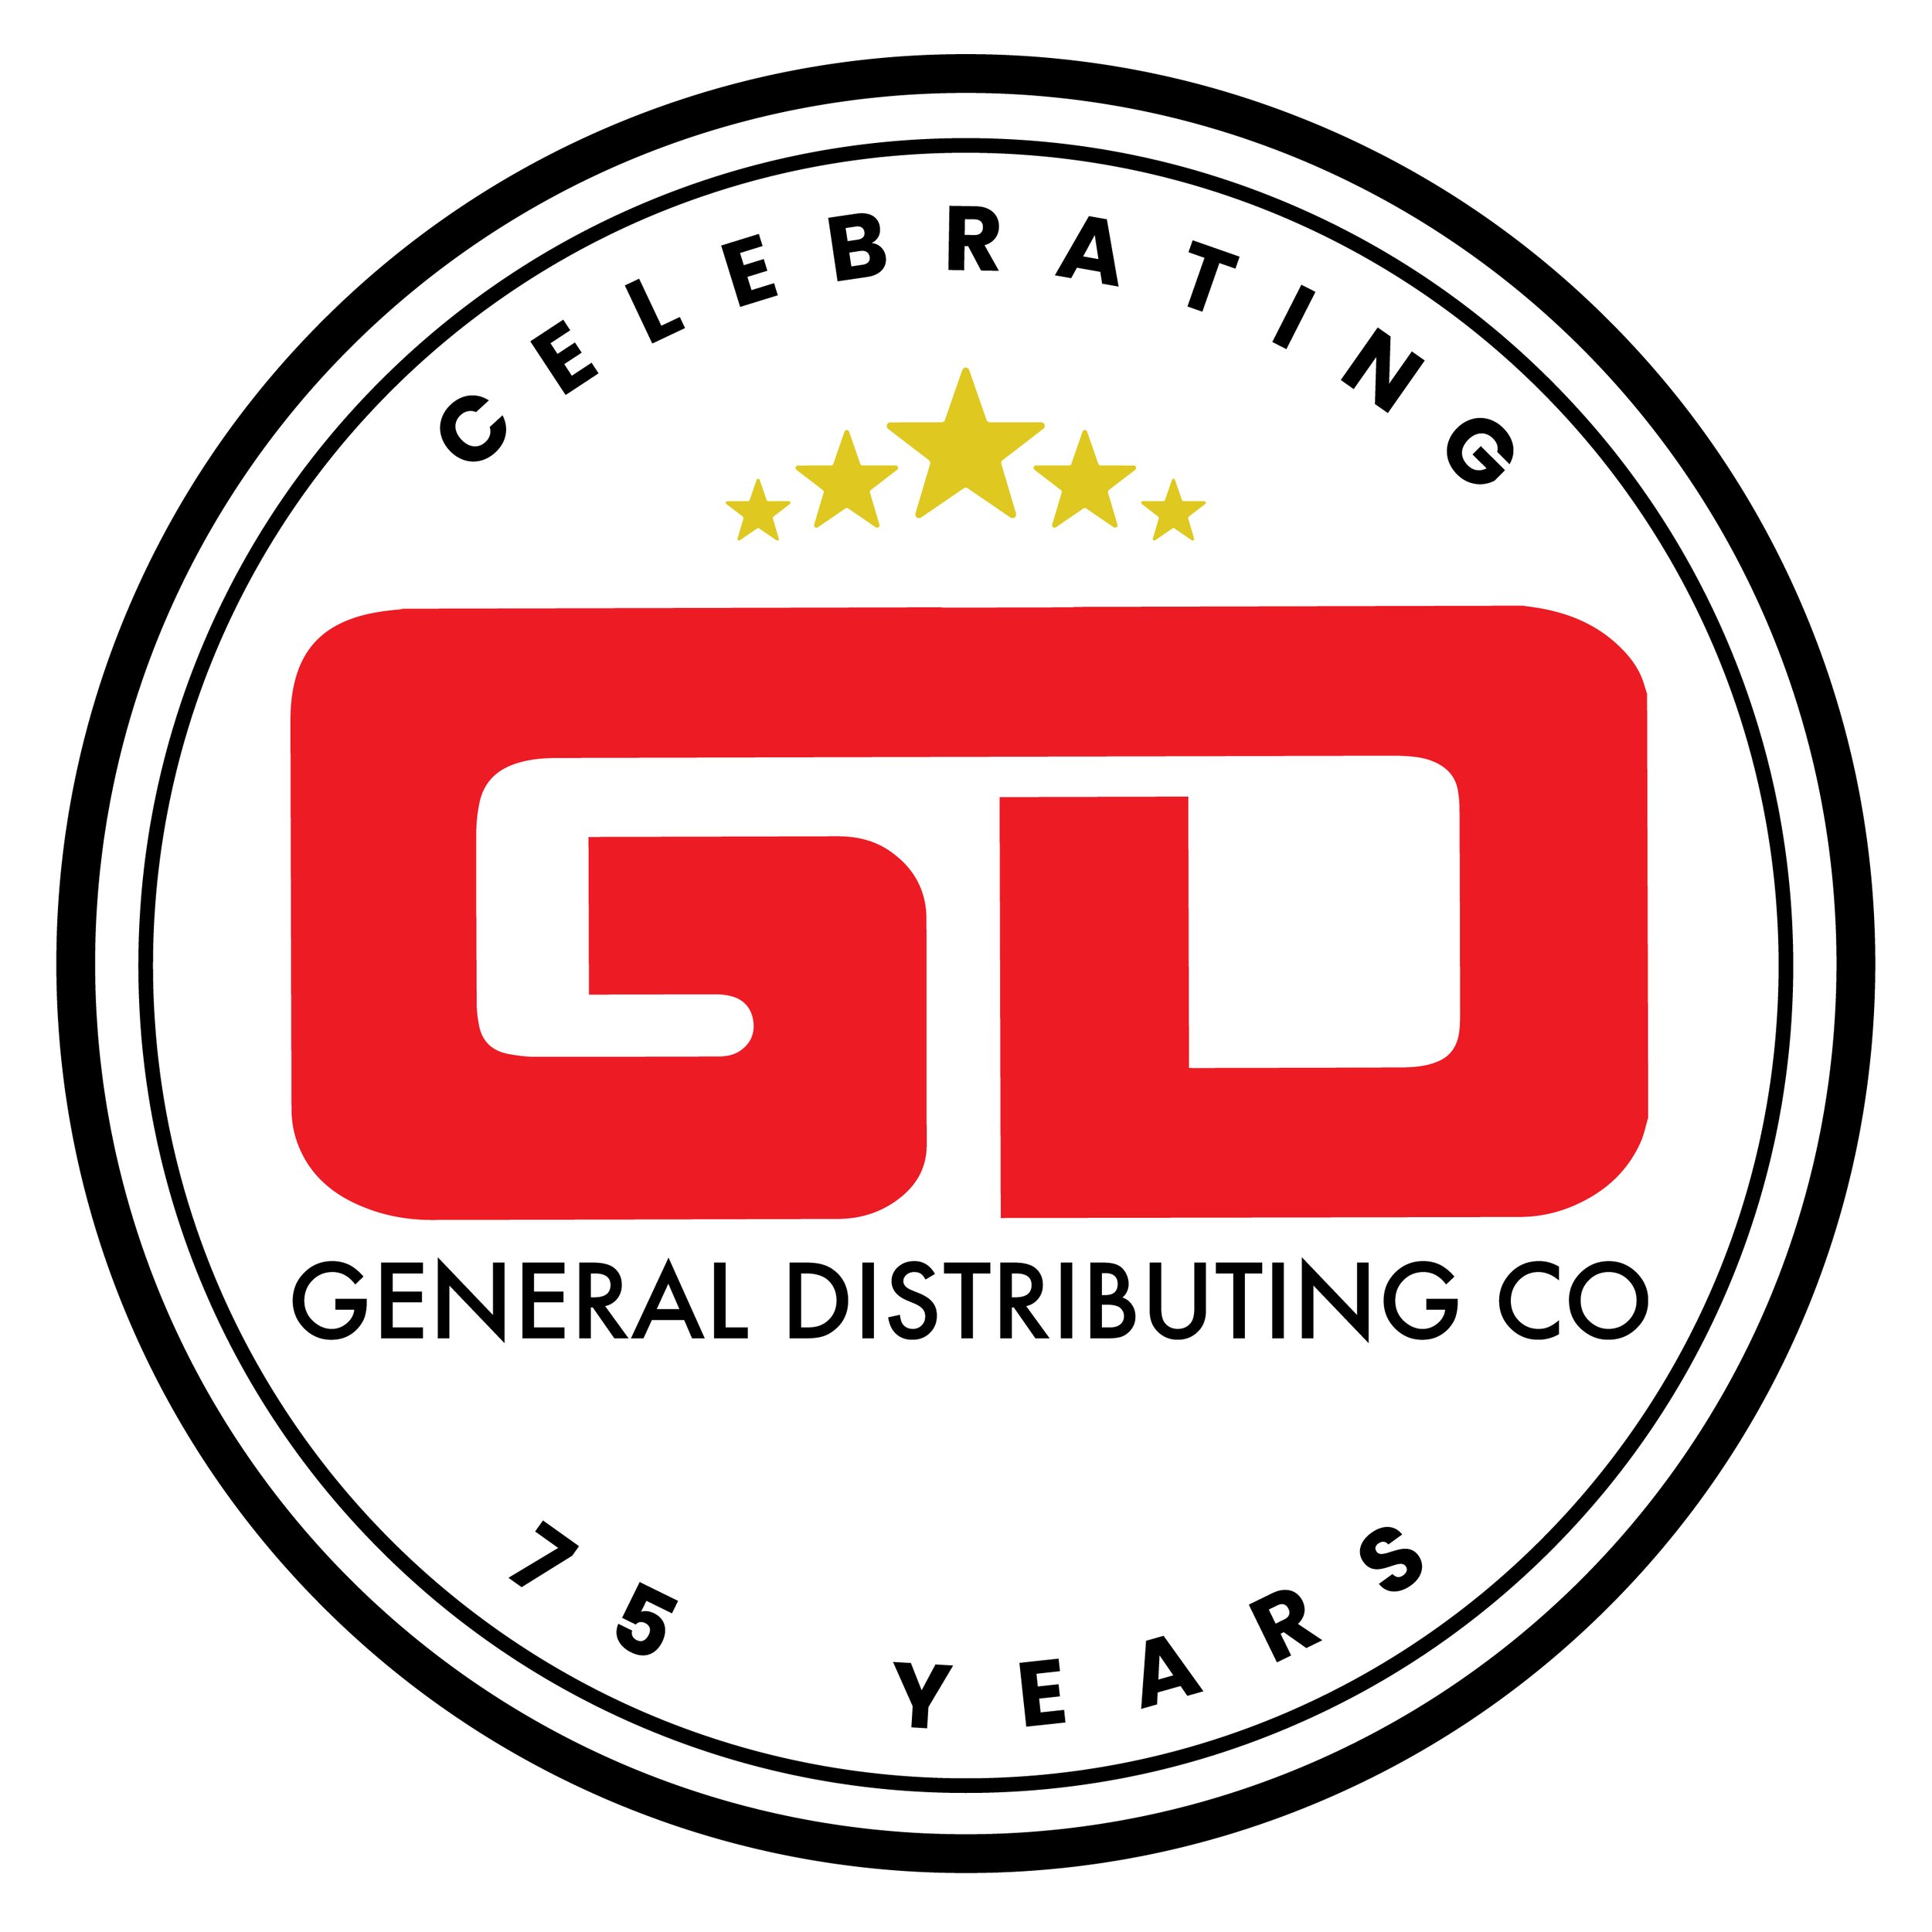 General Distributing co Logo.jpeg